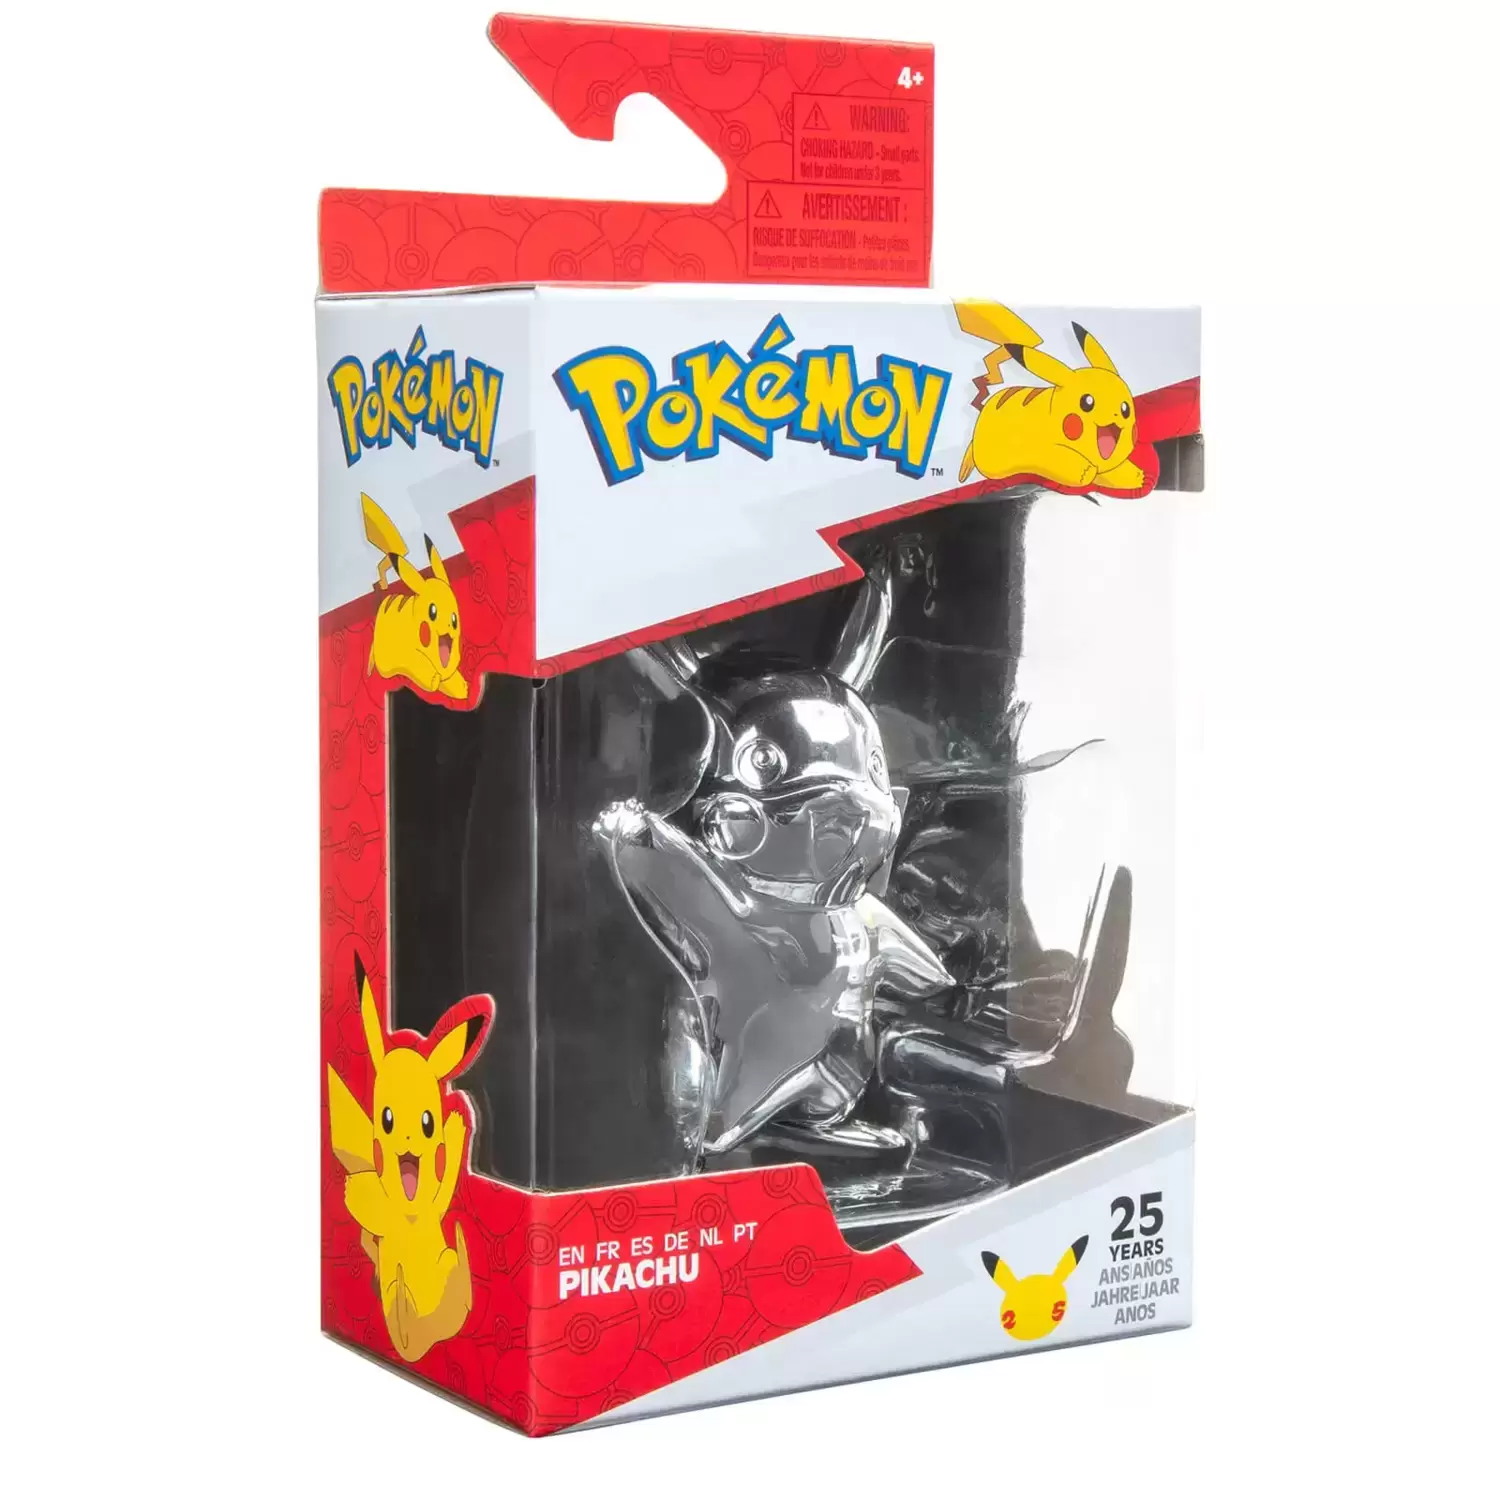 Pokémon Action Figures - Silver Pikachu